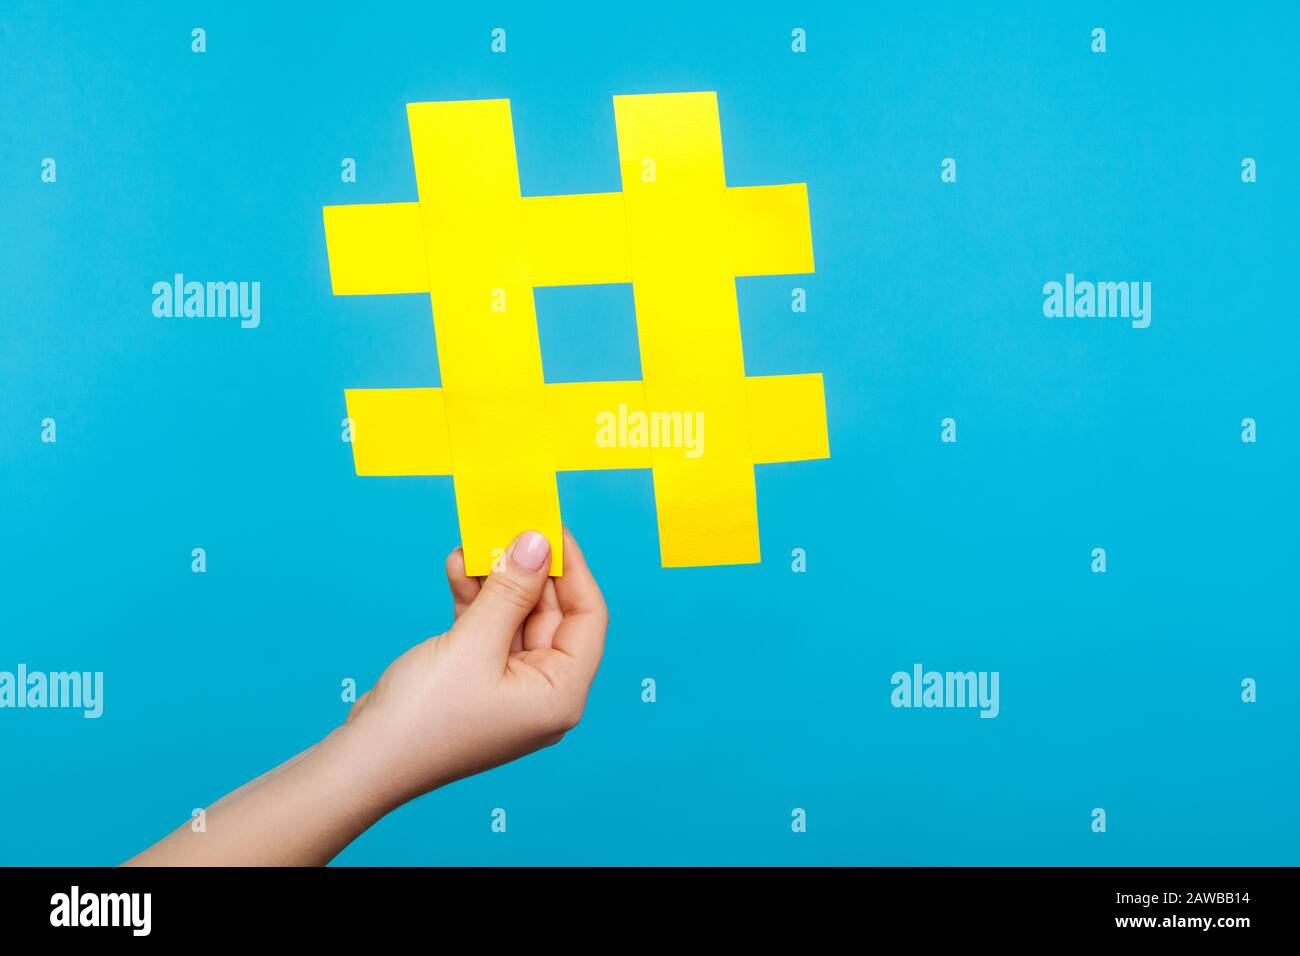 Gros plan de la main de femme tenant le grand signe hashtag de papier jaune, le symbole de hachage de la popularité d'Internet, les tendances de médias célèbres, blogging et contenu viral. IND Banque D'Images